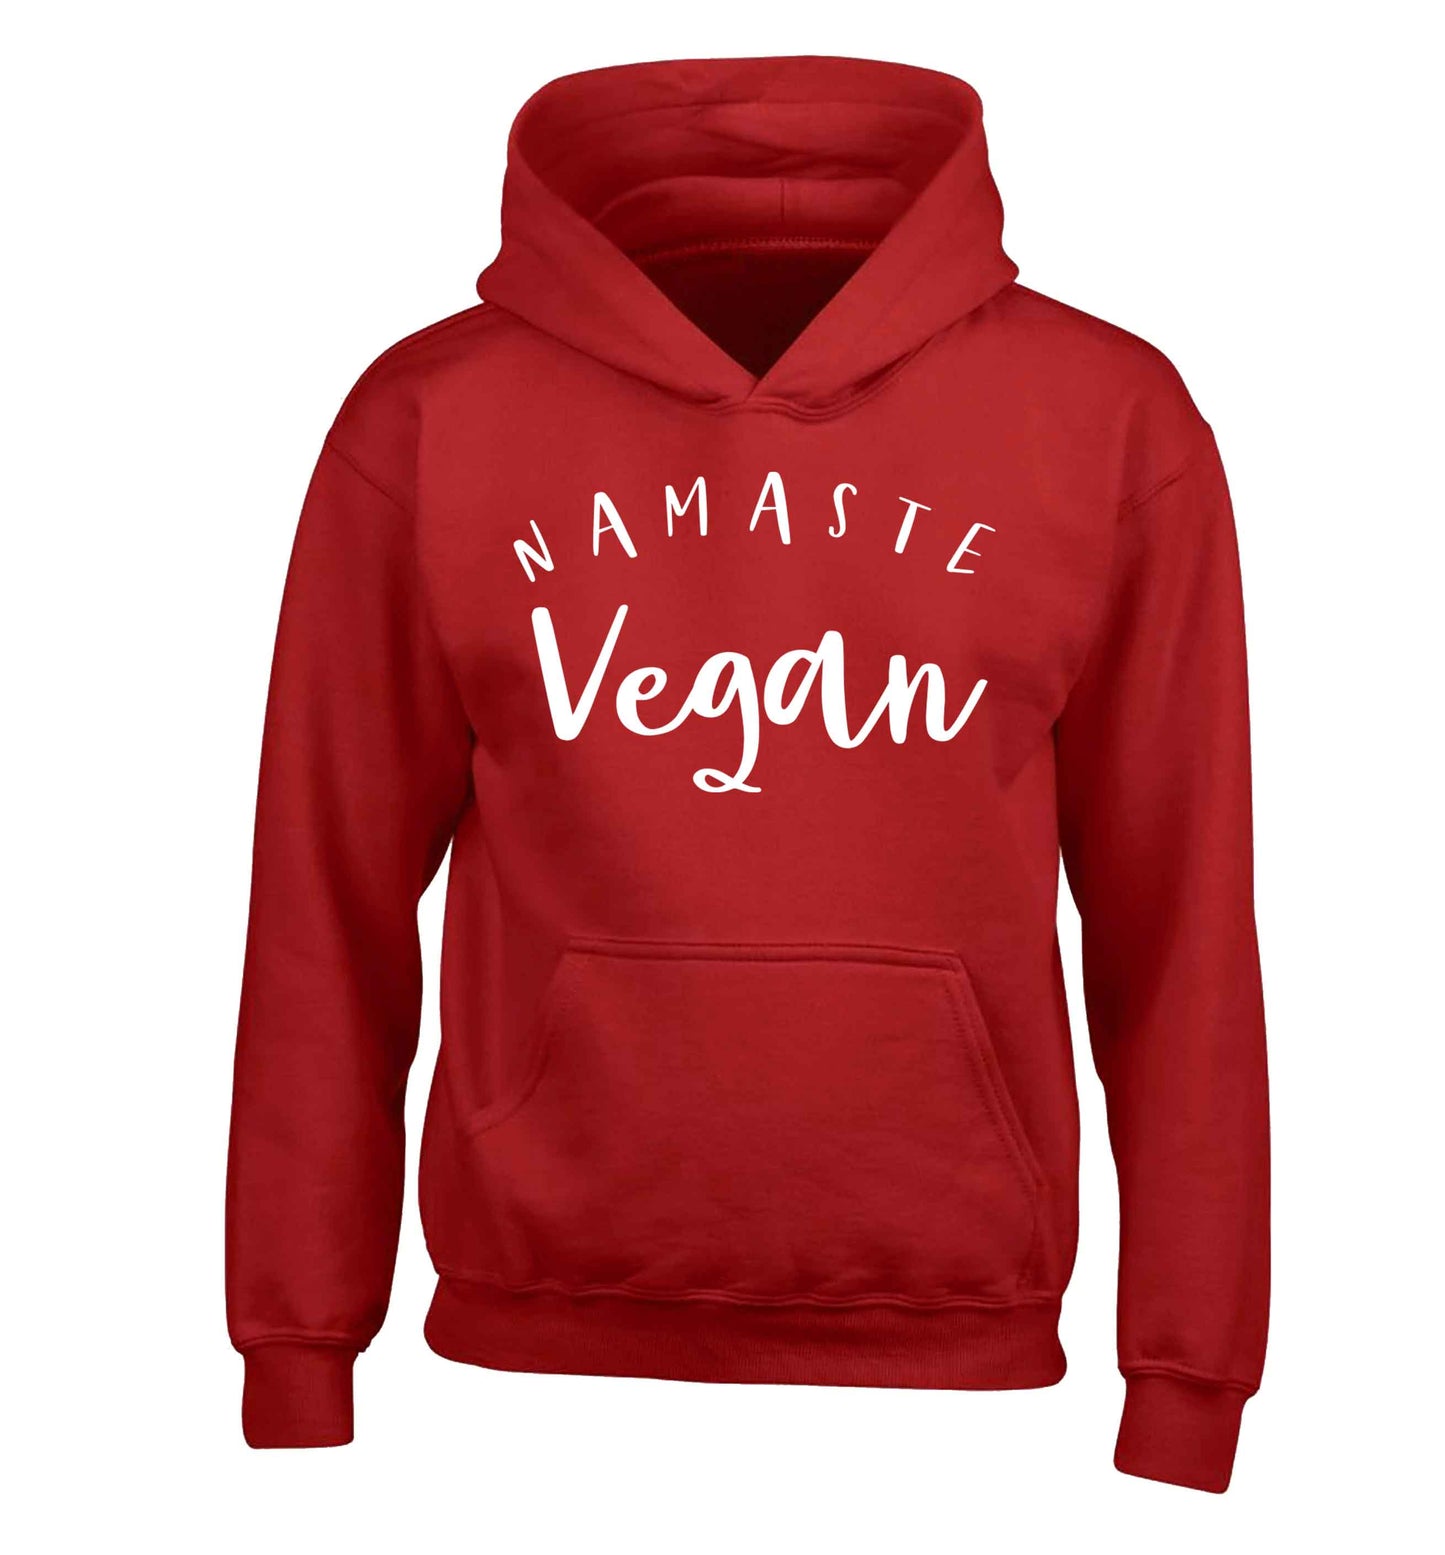 Namaste vegan children's red hoodie 12-13 Years